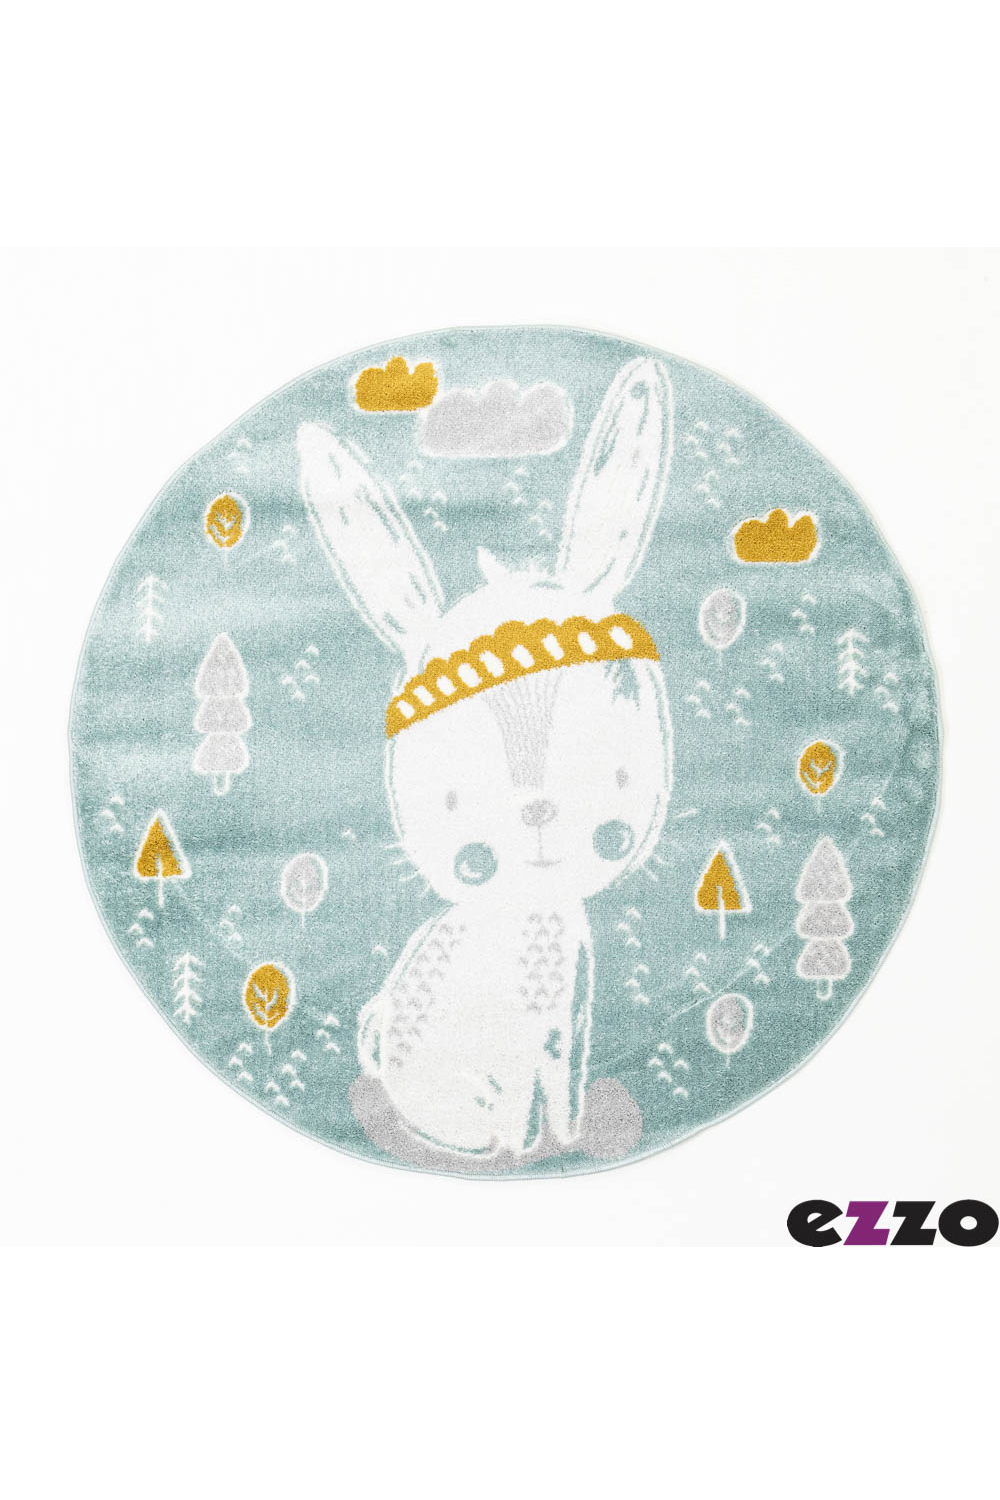 ezzo-Kiddie-Coniglio-B800AX6--Round